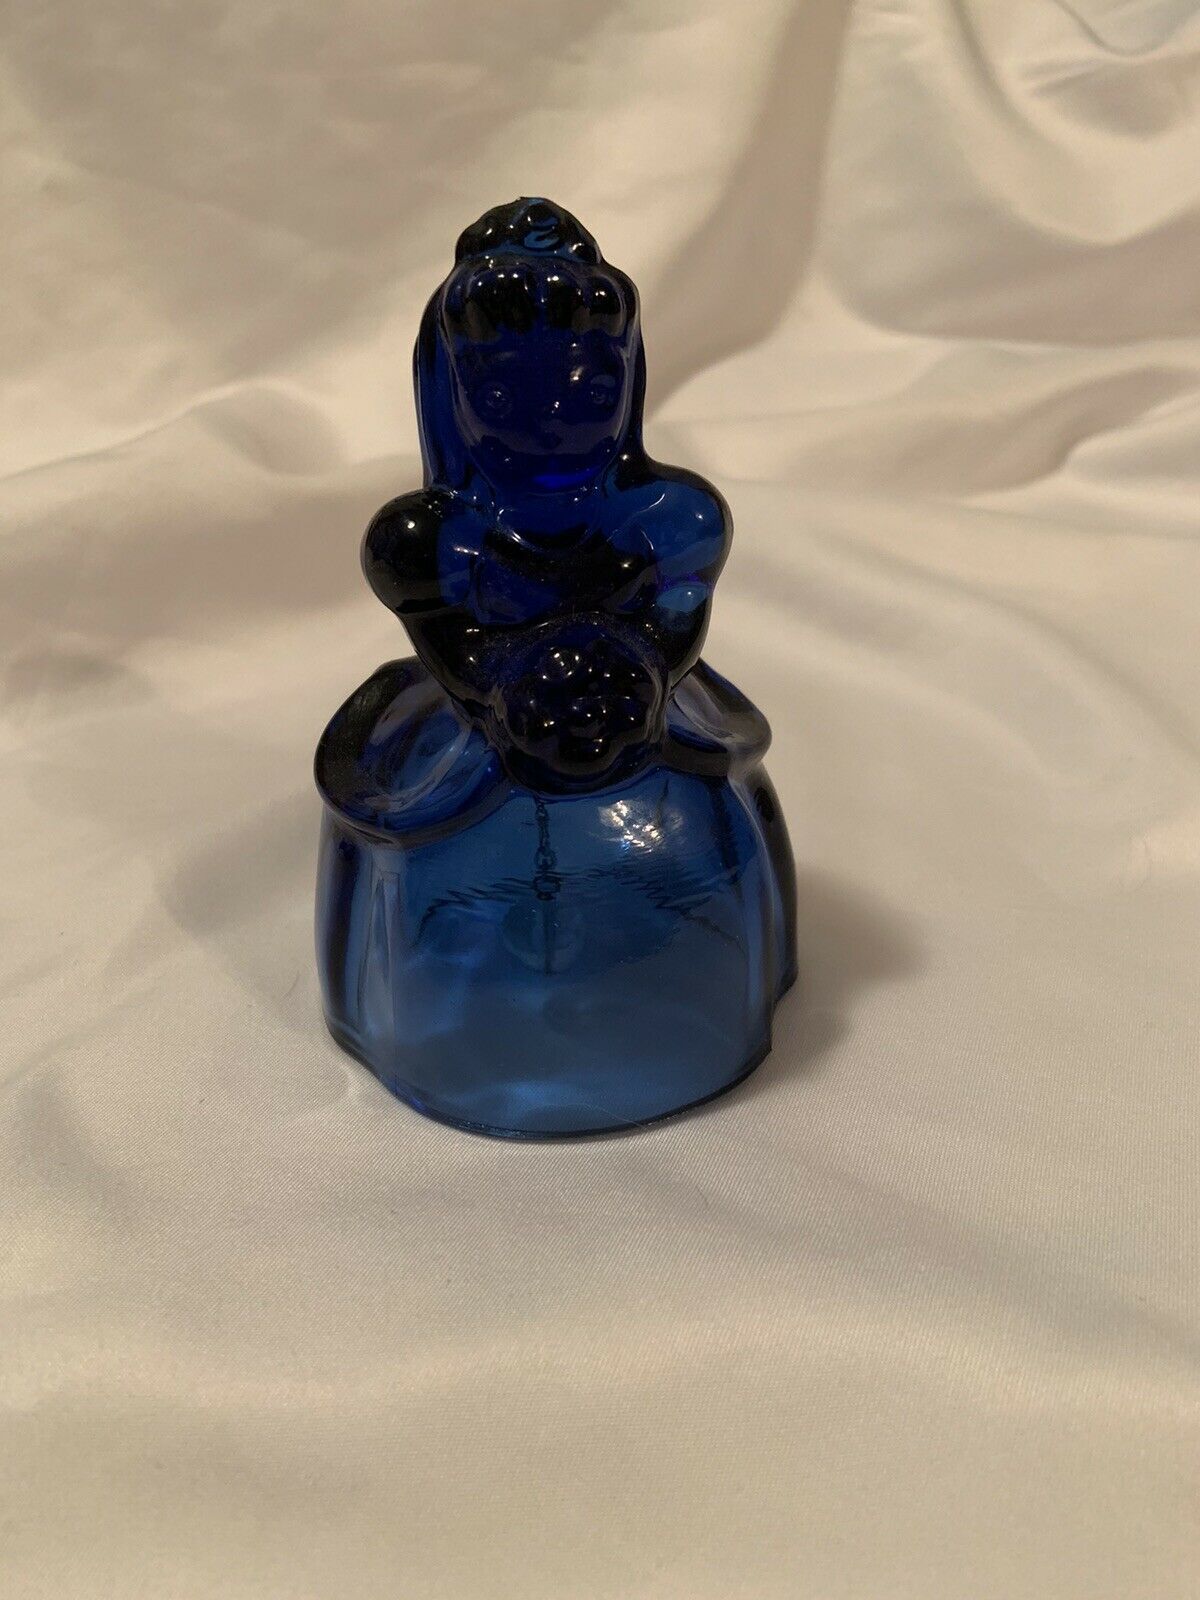 Vintage Imperial Glass-heisey Mold Cobalt Blue Bride Bell-marked Ig